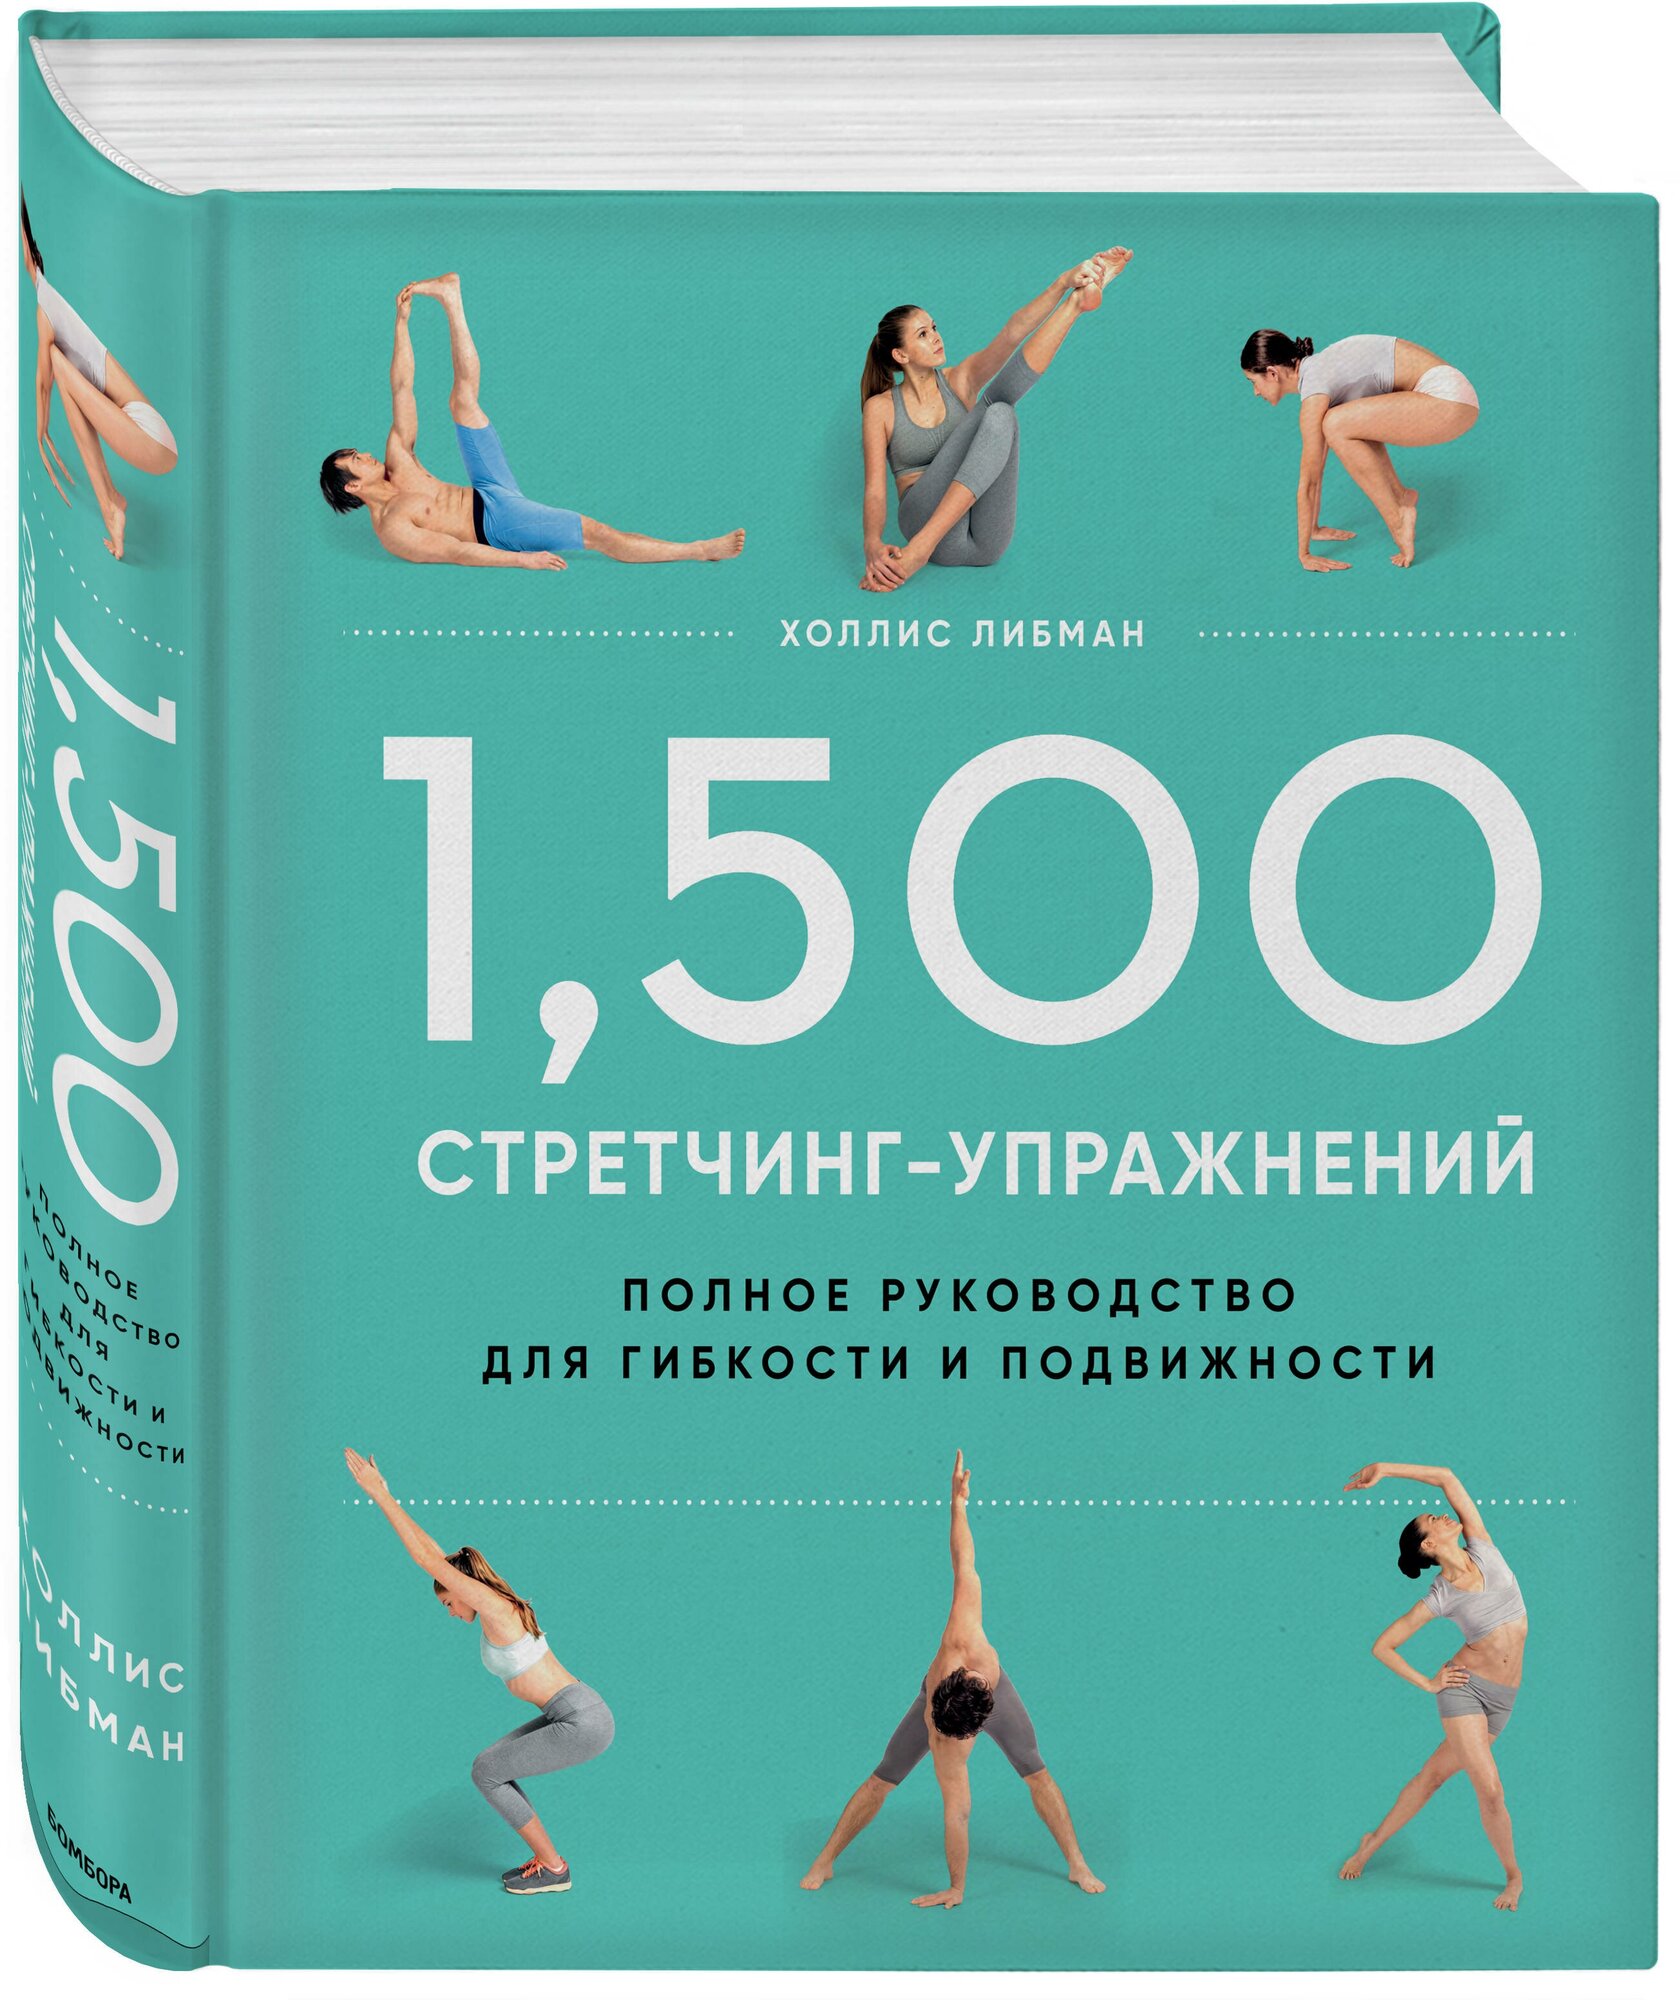 1,500 стретчинг-упражнений. Энциклопедия гибкости и движения - фото №1